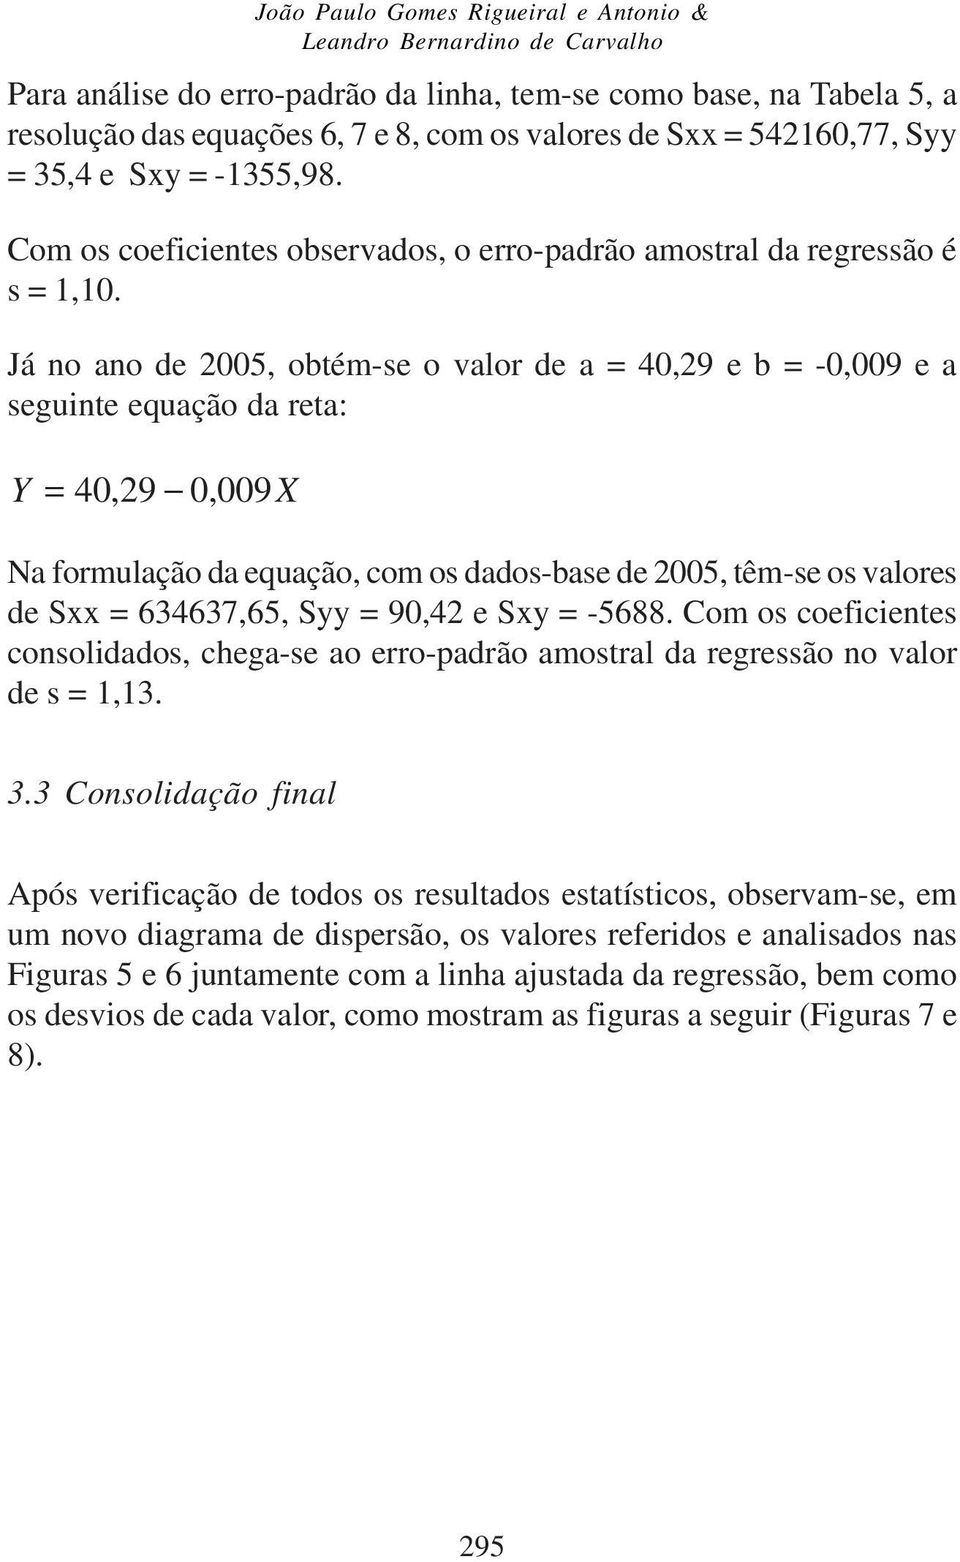 Já o ao de 2005, obtém-se o valor de a = 40,29 e b = -0,009 e a seguite equação da reta: Y = 40,29 0, 009X Na formulação da equação, com os dados-base de 2005, têm-se os valores de Sxx = 634637,65,